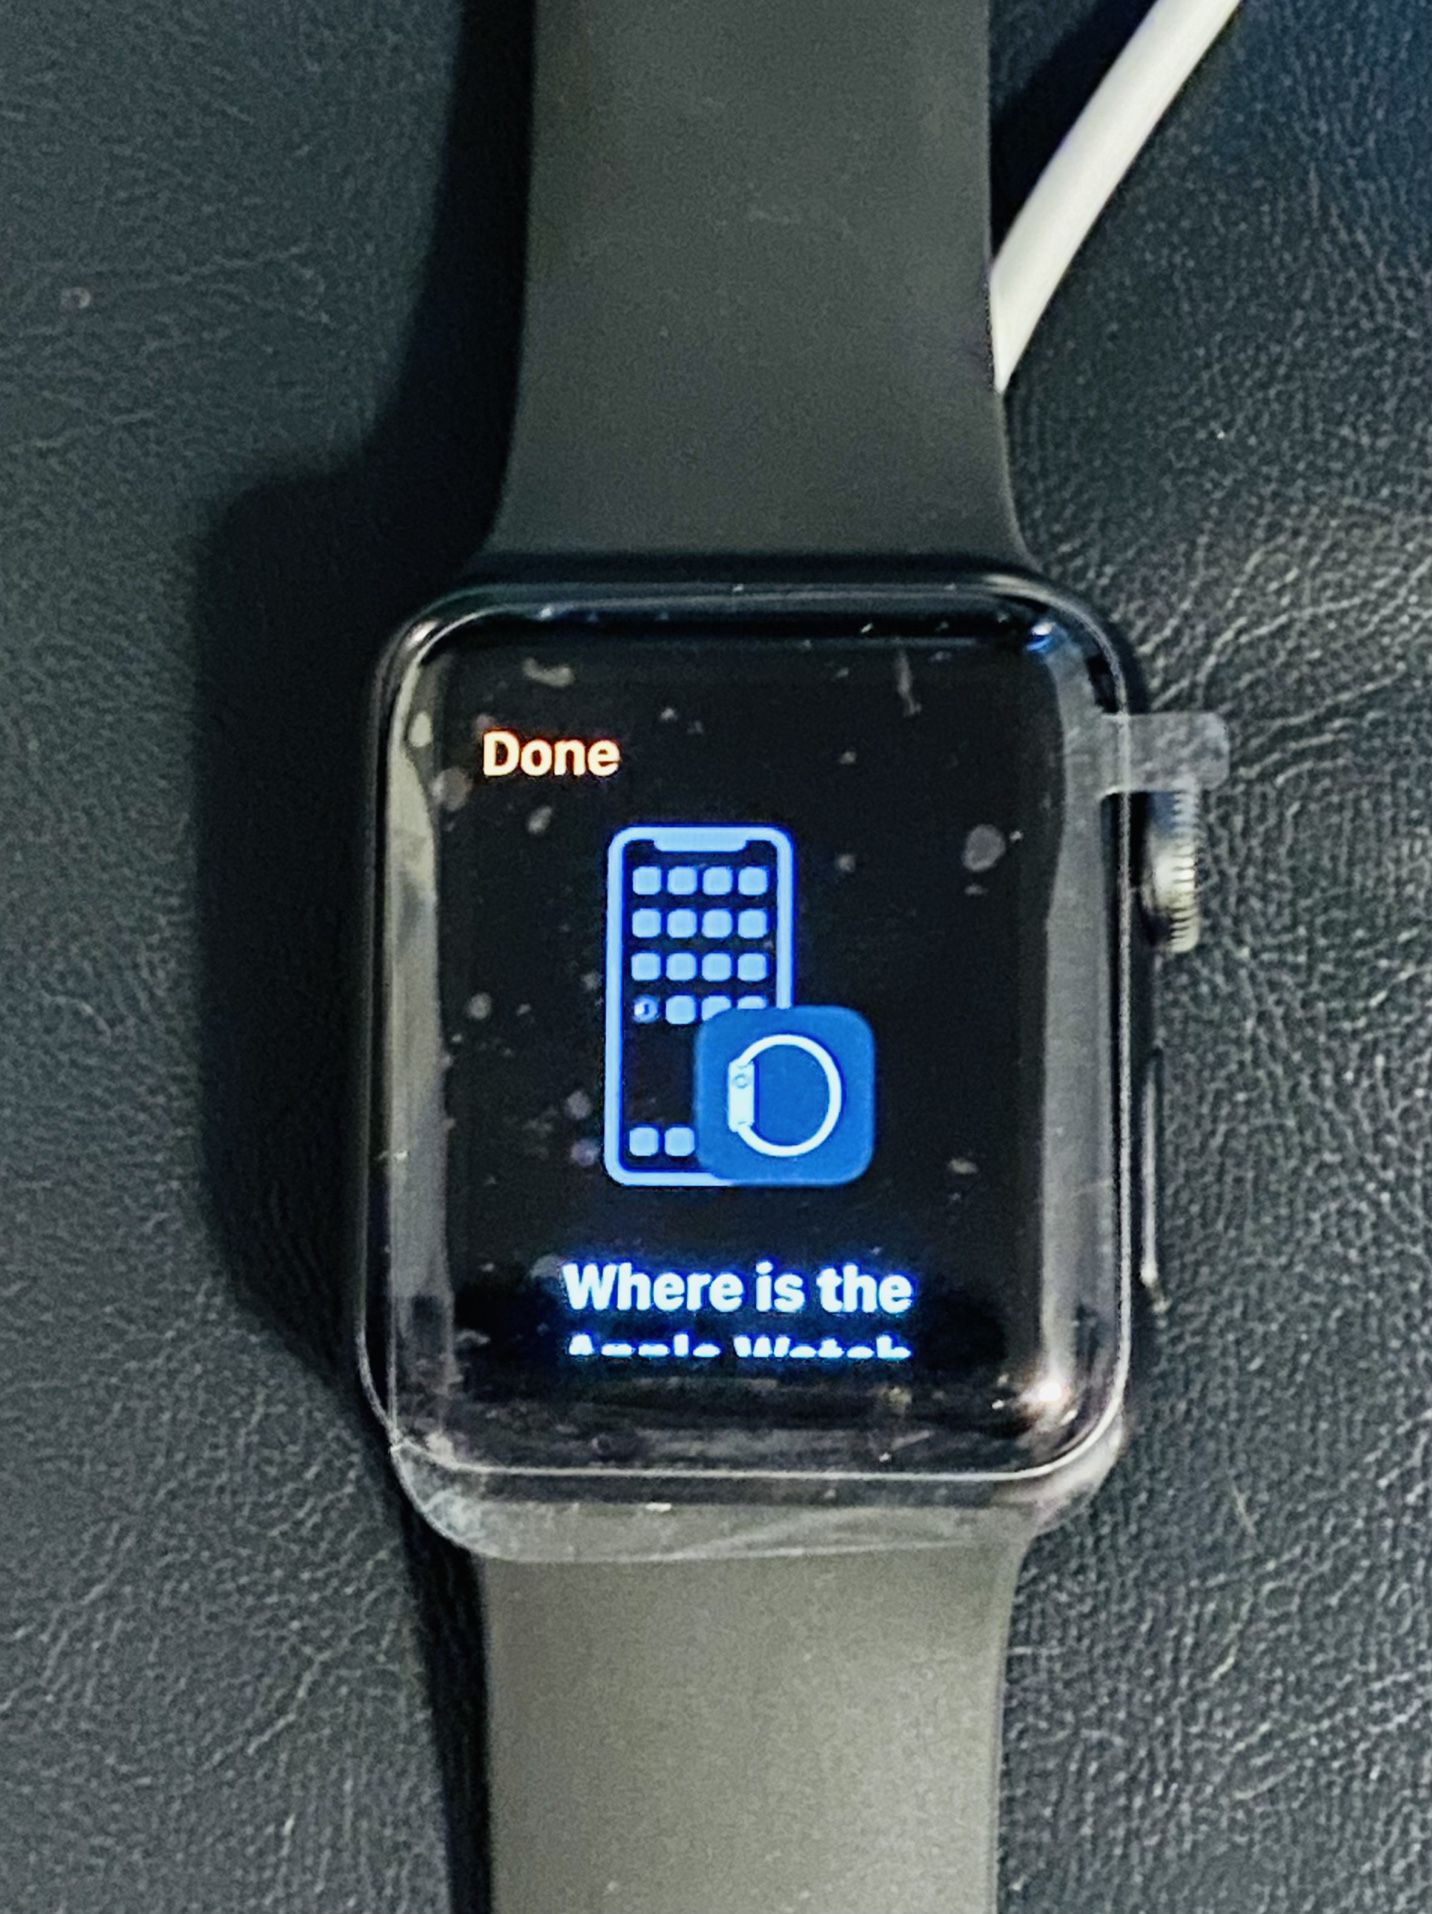 Series 3 Apple Watch WiFi 